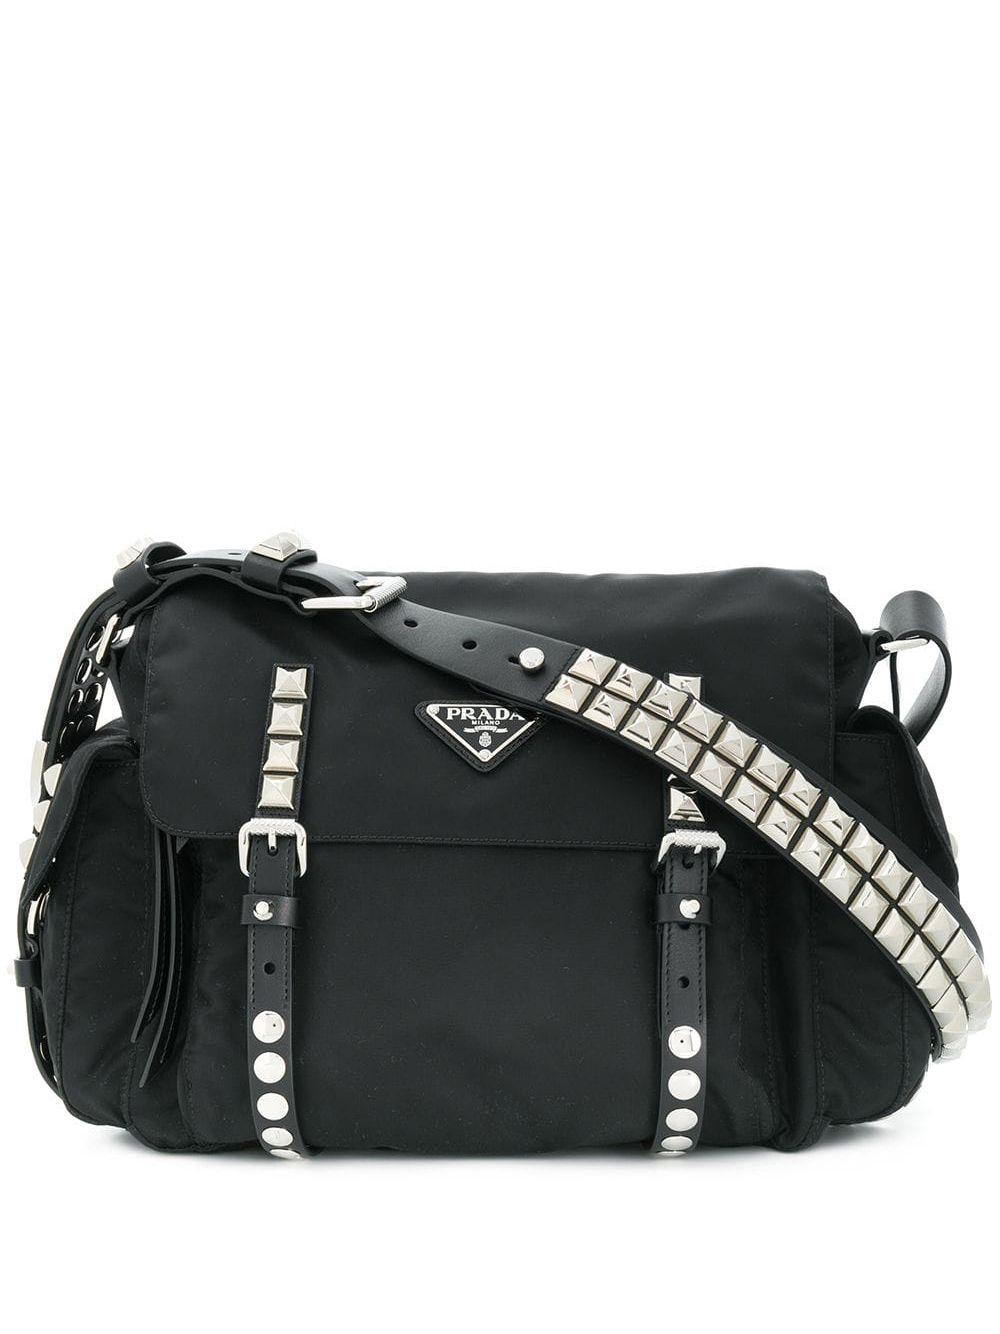 Prada Studded Shoulder Bag in Black | Lyst